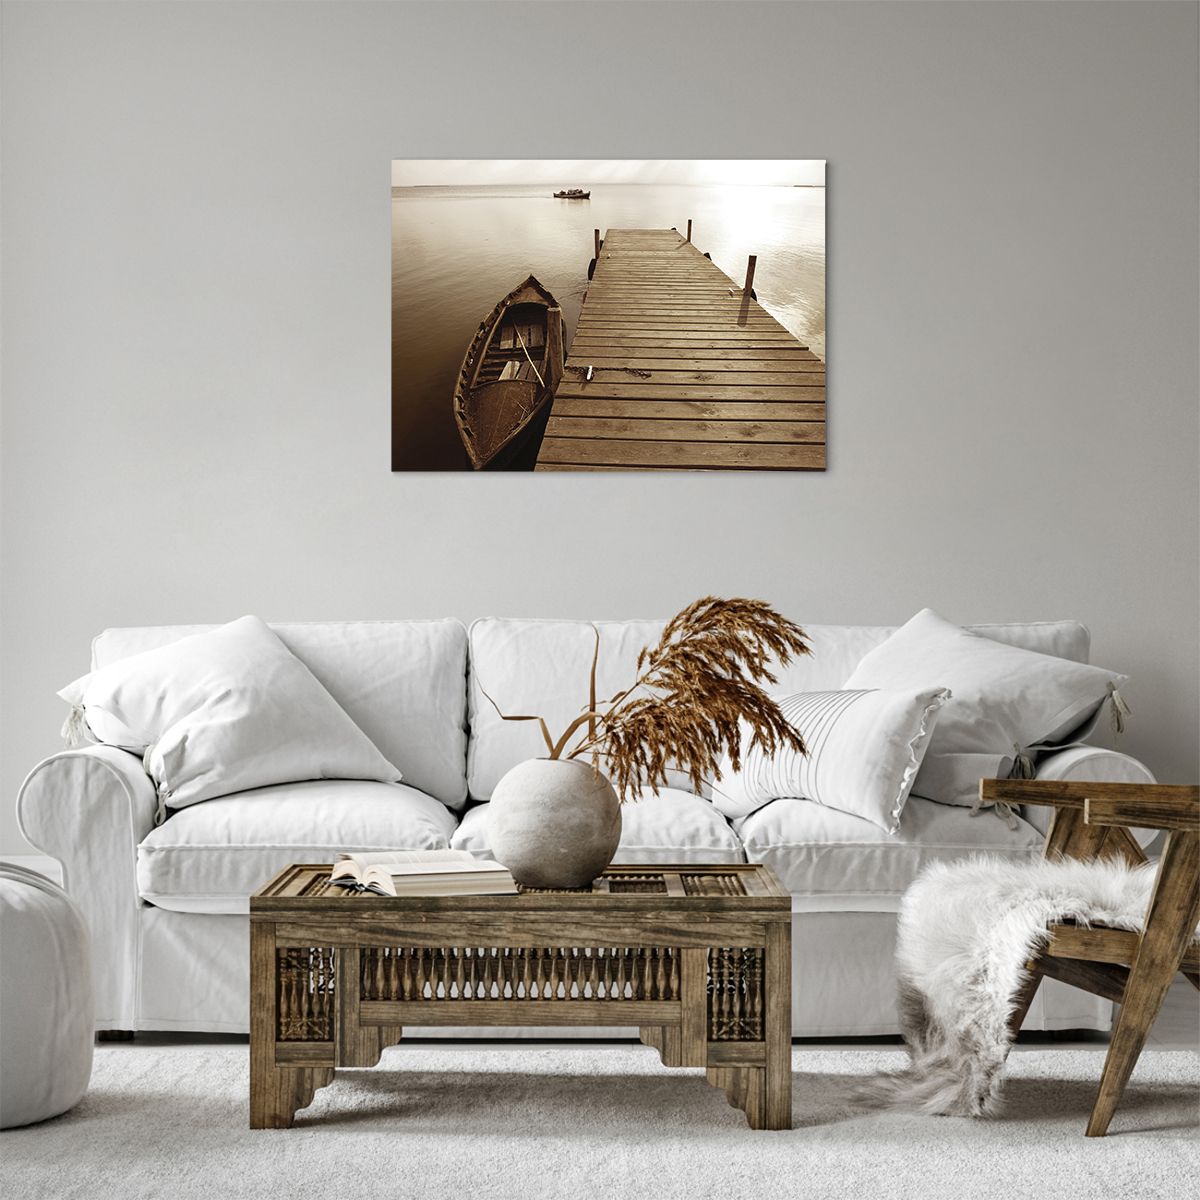 Bild auf Leinwand Landschaft, Bild auf Leinwand See, Bild auf Leinwand Holzbrücke, Bild auf Leinwand Boot, Bild auf Leinwand Natur